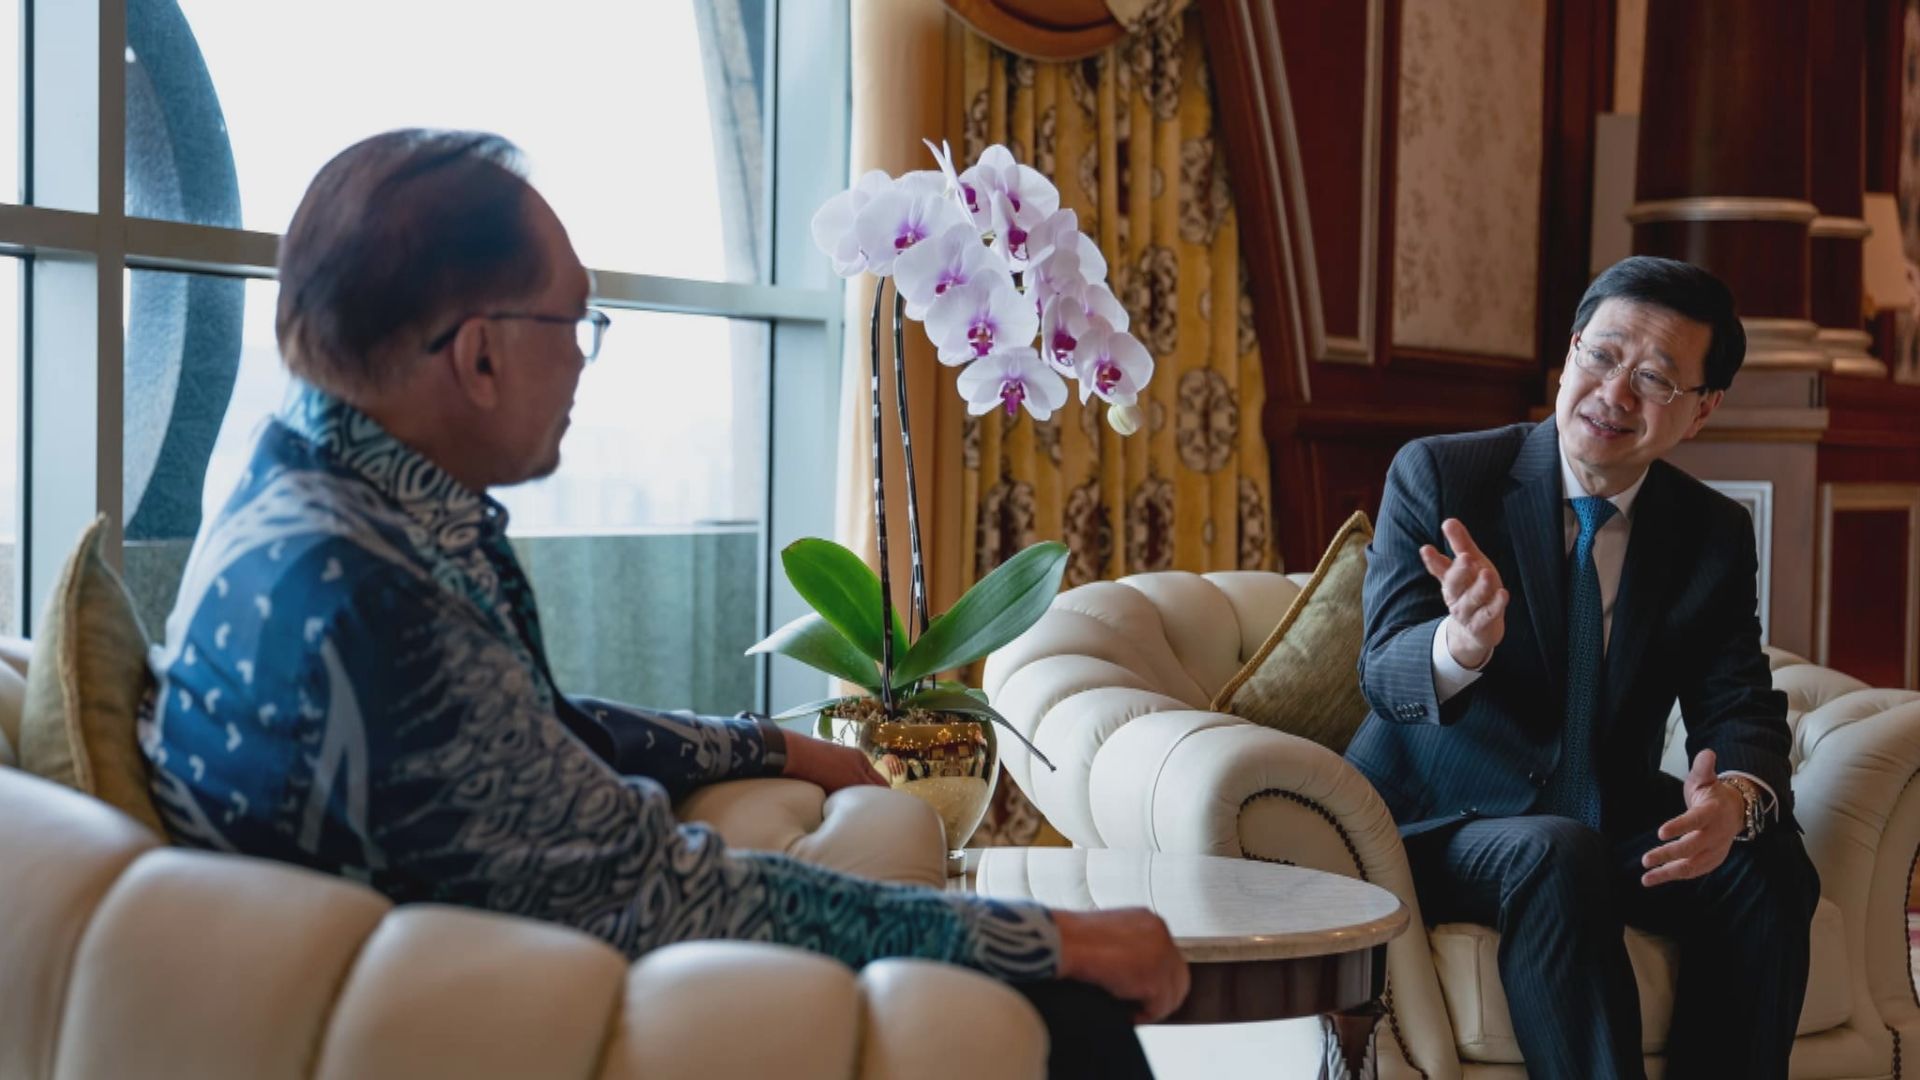 李家超轉往馬來西亞吉隆坡訪問 與總理安華會面